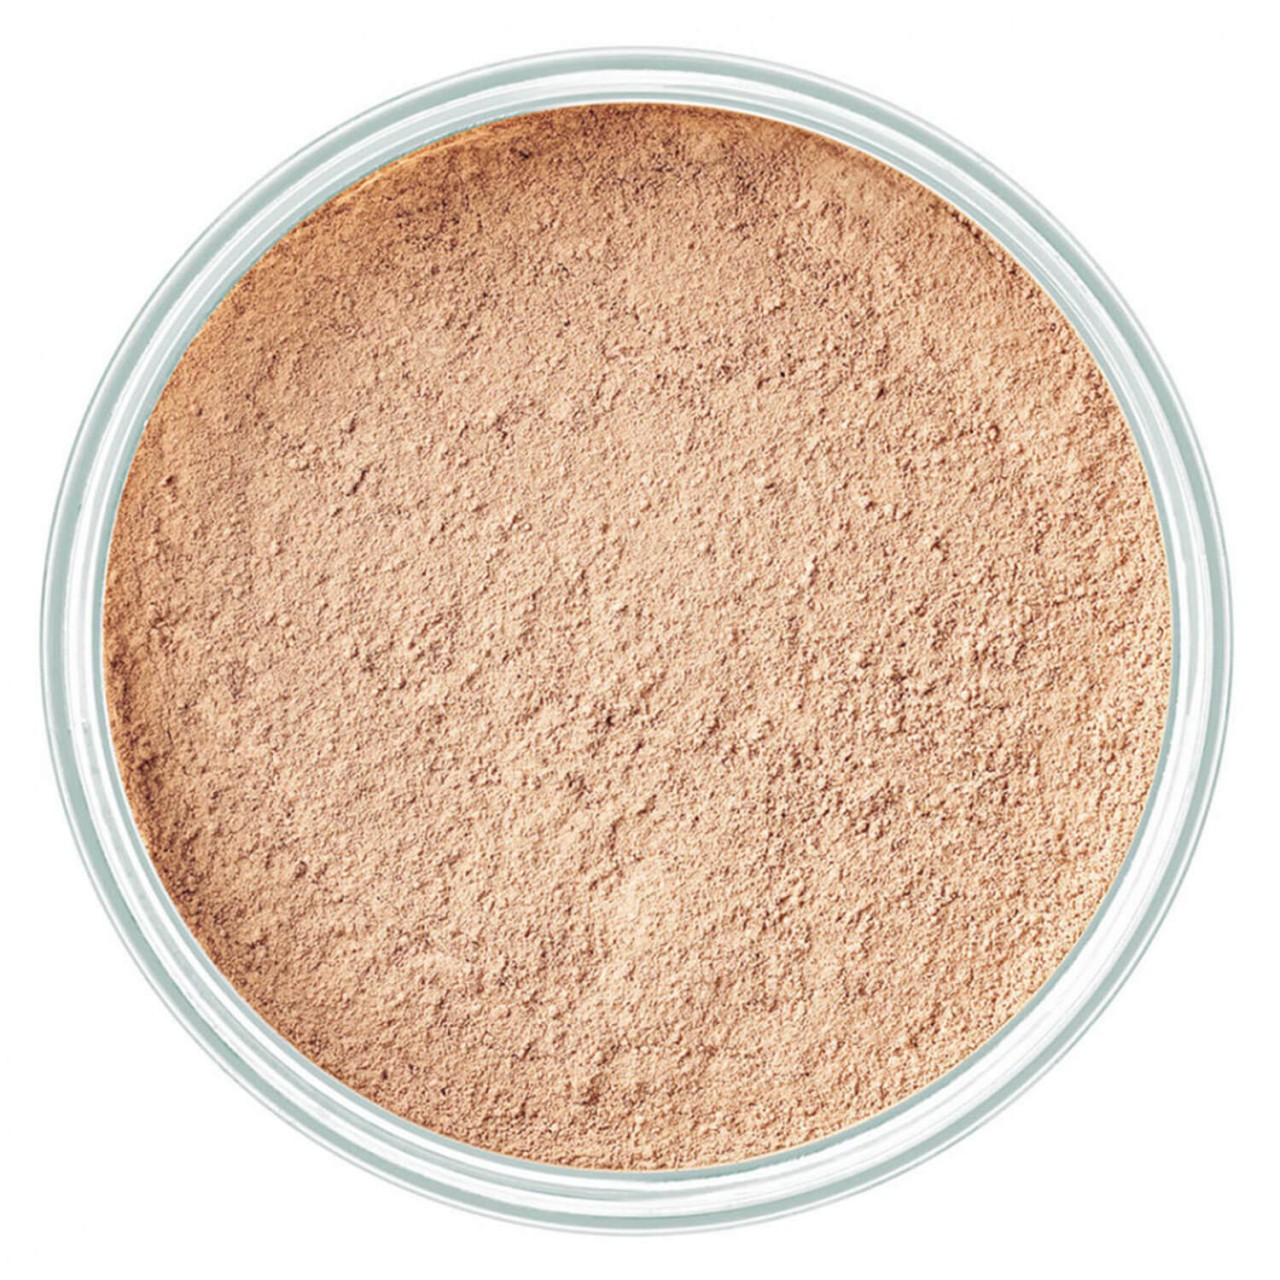 Mineral Powder Foundation - Natural Beige 2 von Artdeco